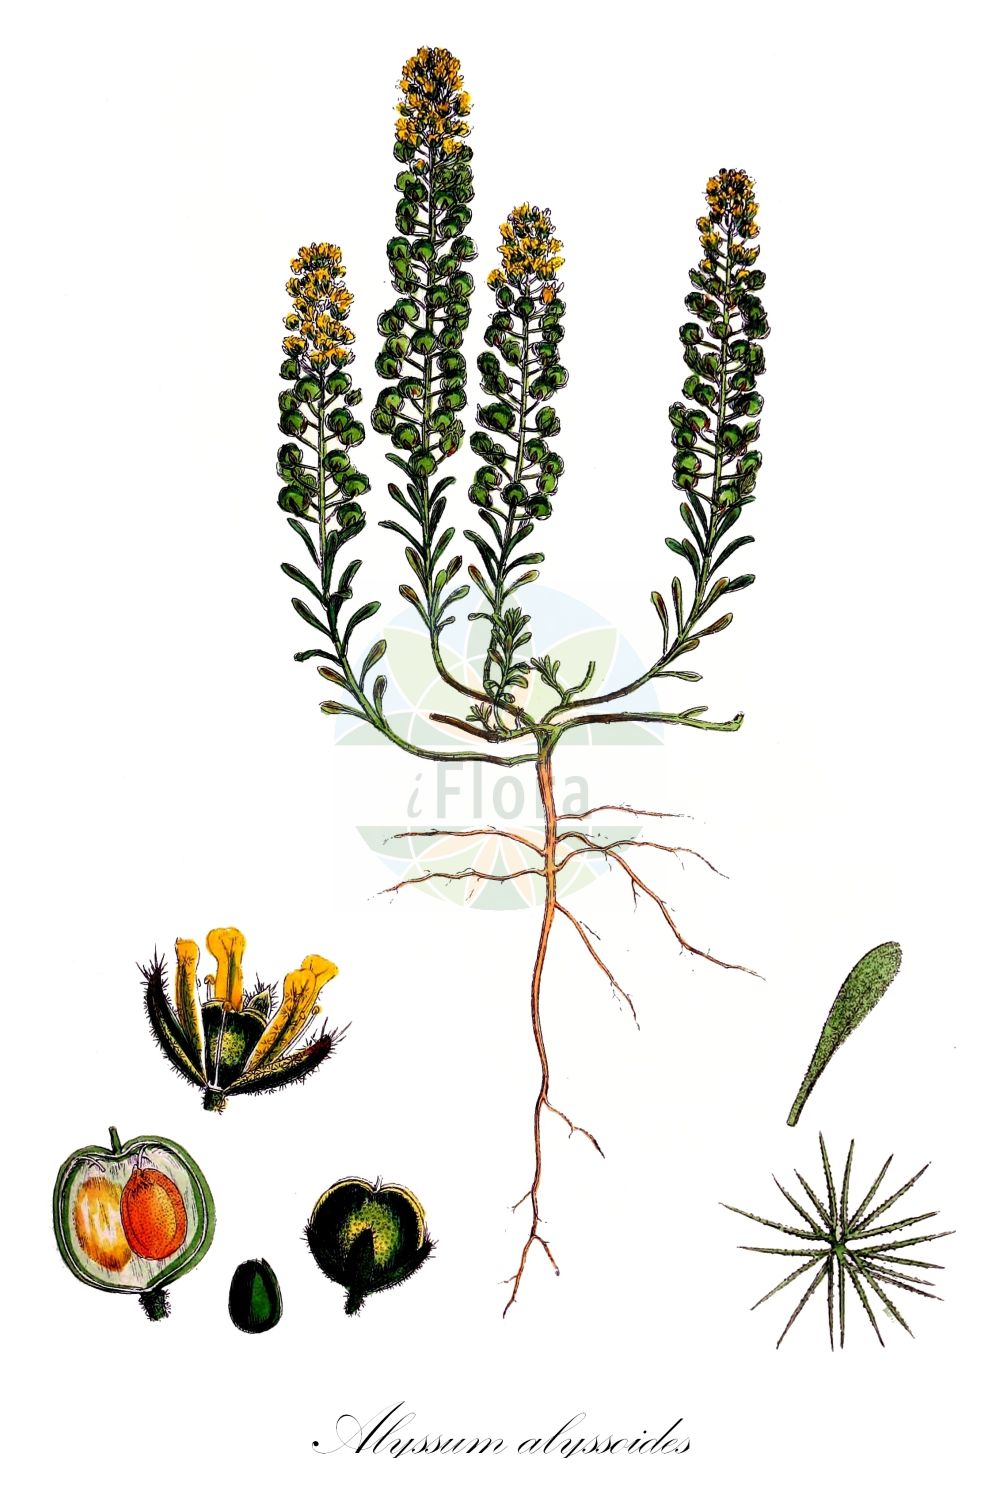 Historische Abbildung von Alyssum alyssoides (Kelch-Steinkraut - Small Alison). Das Bild zeigt Blatt, Bluete, Frucht und Same. ---- Historical Drawing of Alyssum alyssoides (Kelch-Steinkraut - Small Alison). The image is showing leaf, flower, fruit and seed.(Alyssum alyssoides,Kelch-Steinkraut,Small Alison,Adyseton alyssoides,Alyssum alsinifolium,Alyssum alyssoides,Alyssum arvaticum,Alyssum calycinum,Alyssum campestre,Alyssum conglobatum,Alyssum erraticum,Alyssum fontqueri,Alyssum micropetalum,Alyssum minus,Alyssum phymatocarpum,Alyssum polyodon,Alyssum ruderale,Alyssum sabulosum,Alyssum schlosseri,Alyssum sublineare,Alyssum vagum,Clypeola alyssoides,Clypeola campestris,Psilonema calycinum,Psilonema calycinum var. depressum,Kelch-Steinkraut,Small Alison,Pale Alison,Pale Madwort,Small Alyssum,Yellow Alyssum,Alyssum,Steinkraut,Alison,Brassicaceae,Kreuzblütler,Cabbage family,Blatt,Bluete,Frucht,Same,leaf,flower,fruit,seed,Sowerby (1790-1813))